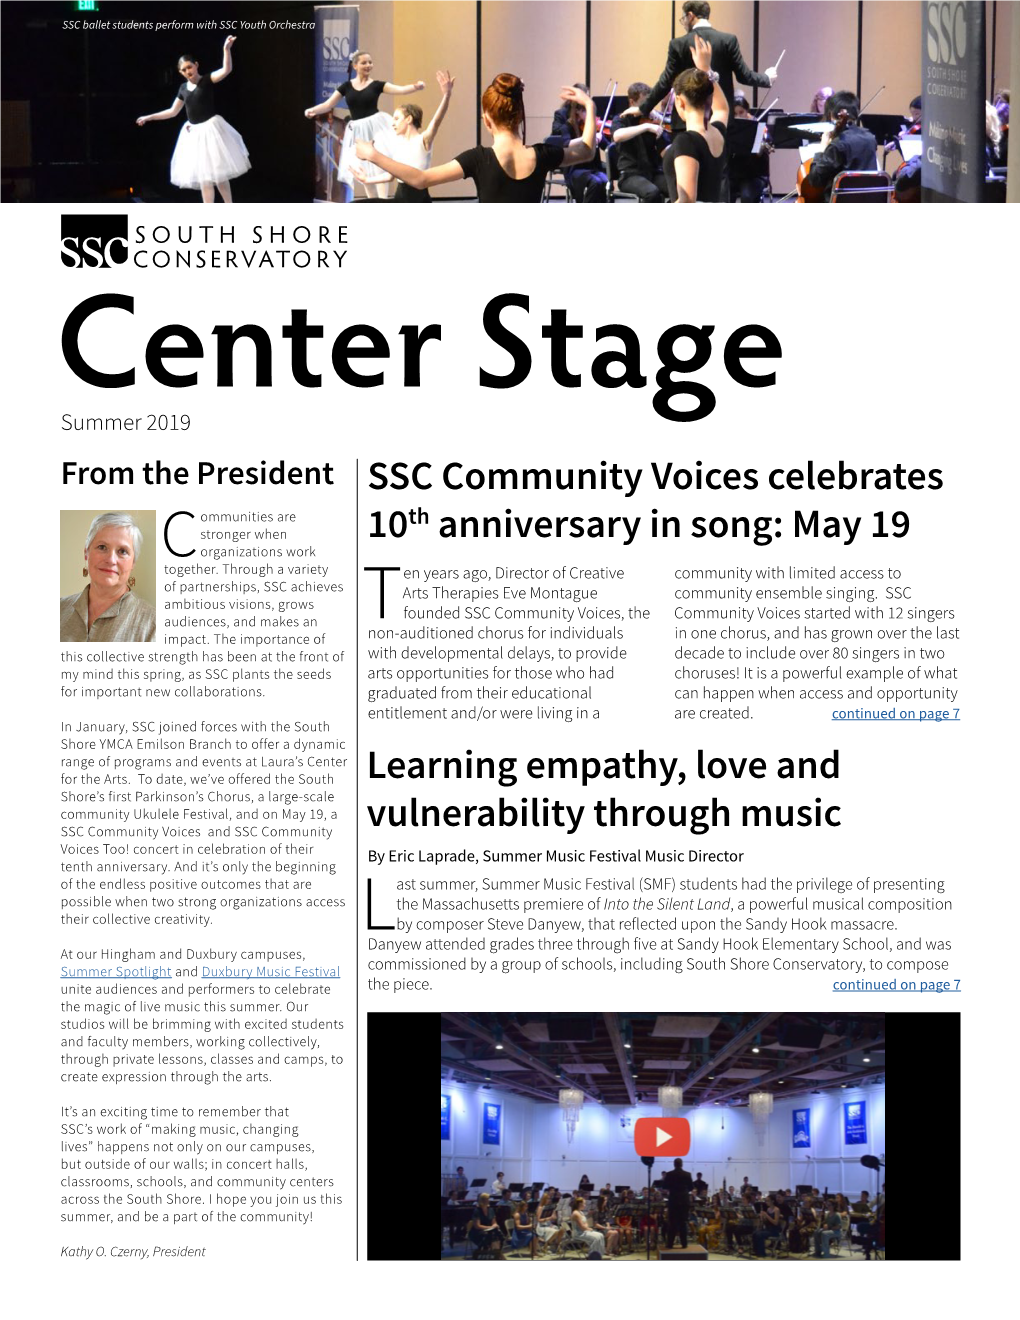 SSC Community Voices Celebrates 10Th